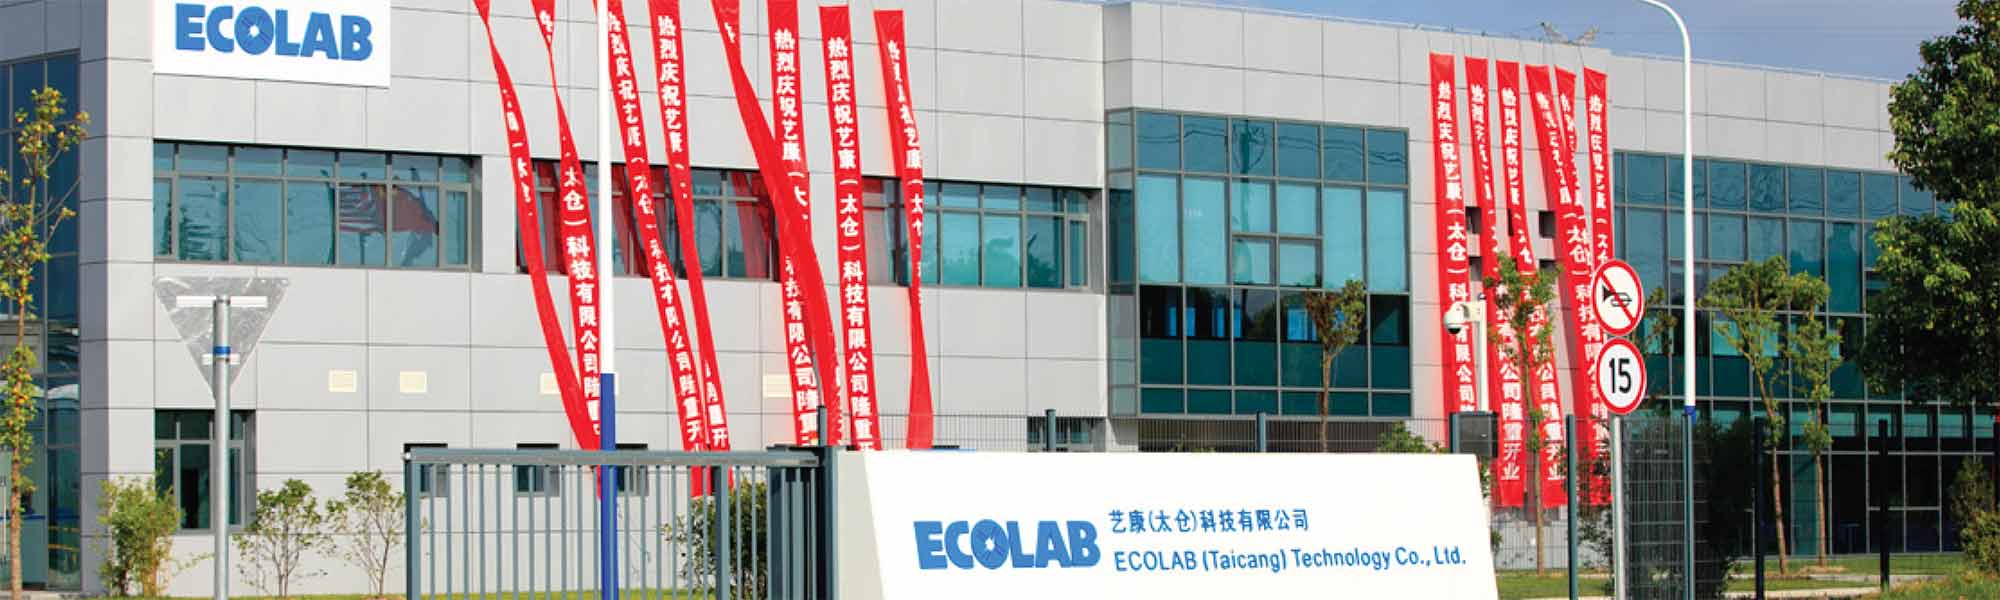 Ecolab-fabriek Taicang in China, gecertificeerd als leider op het vlak van watermilieubeheer